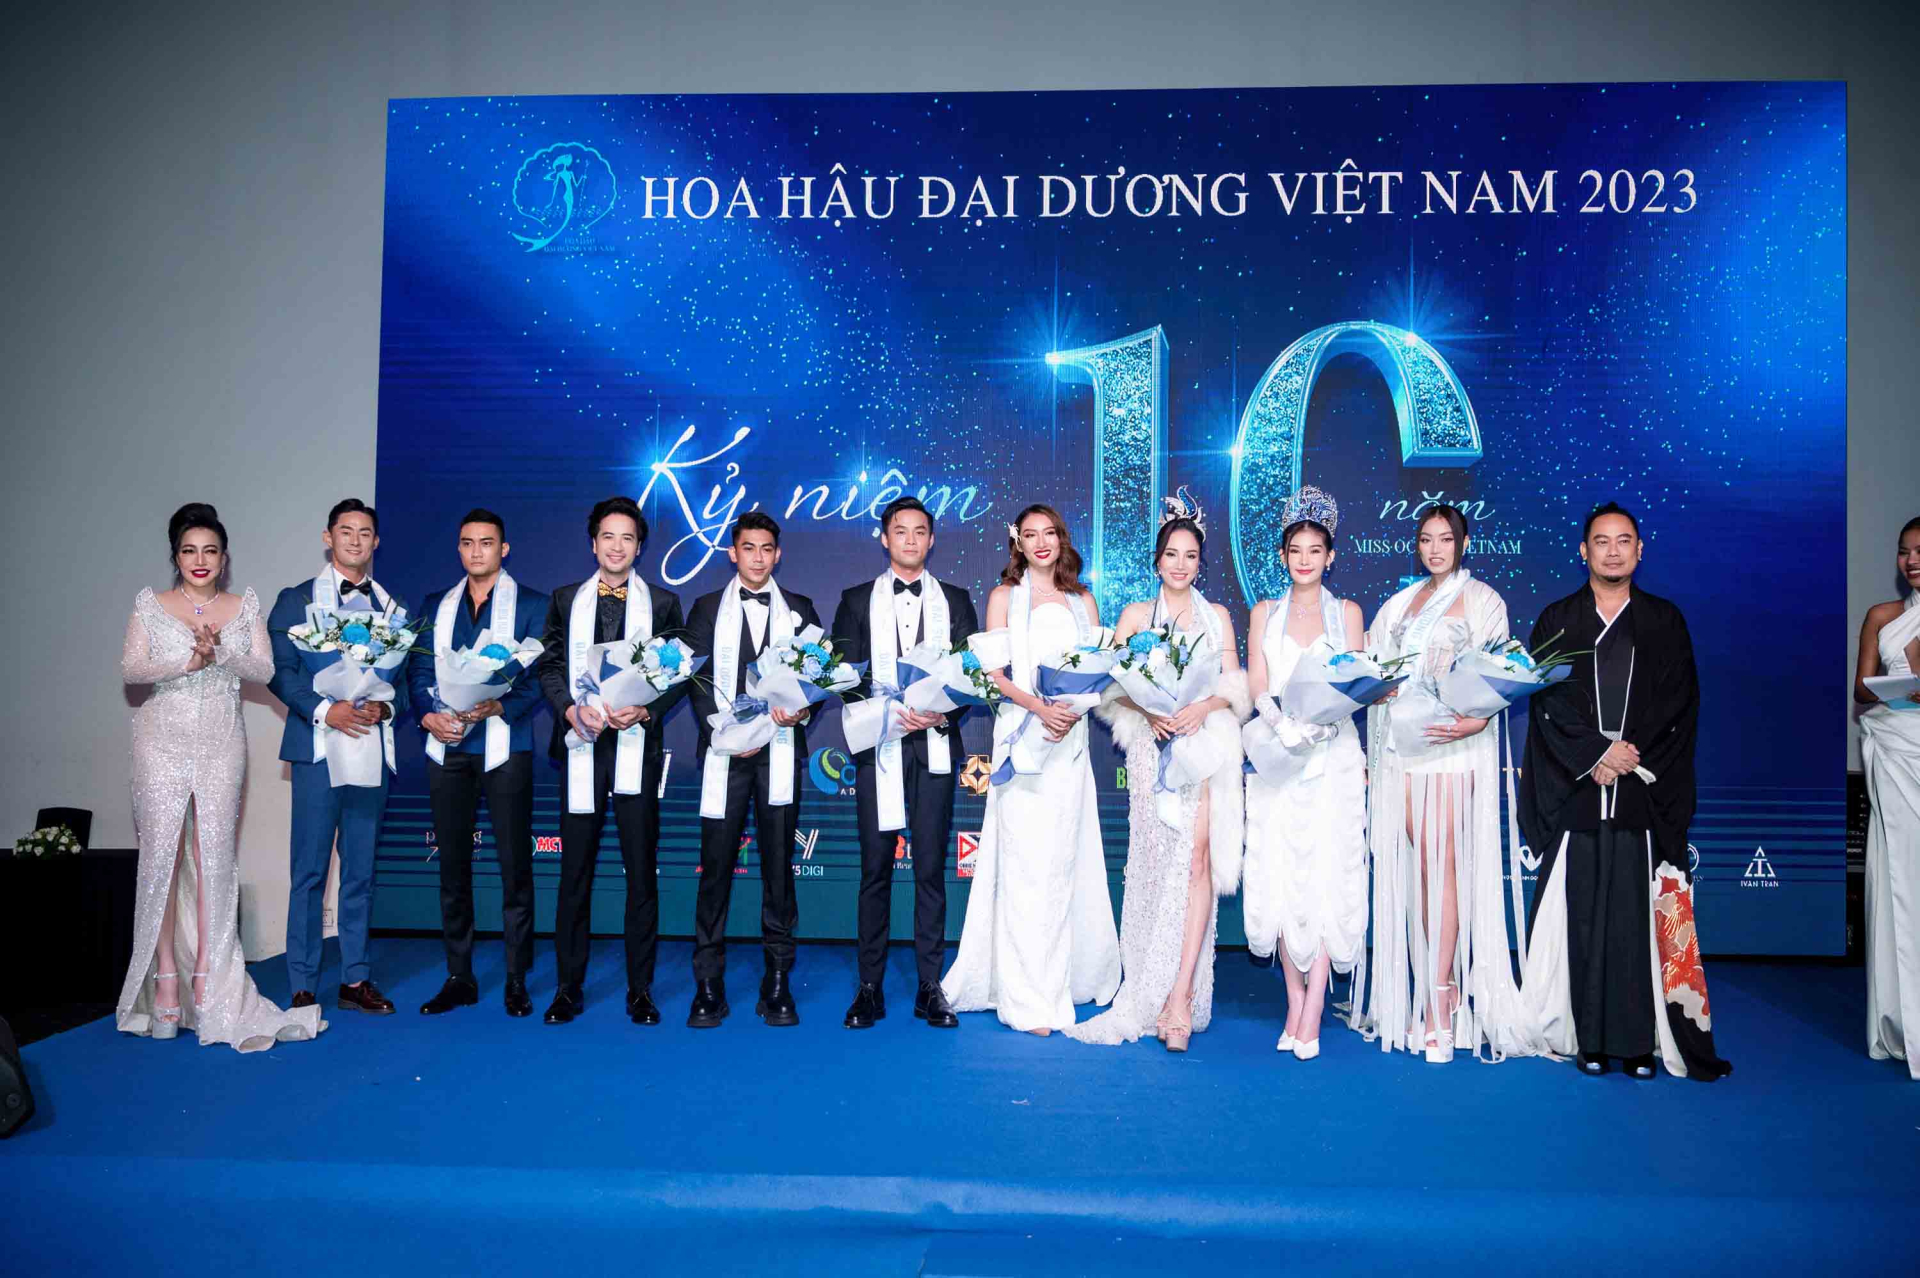 Cũng trong sự kiện, chủ tịch Võ Việt Chung chính thức công bố thêm 3 cuộc thi sắc đẹp hoàn toàn mới đã được anh đăng ký bản quyền tổ chức.